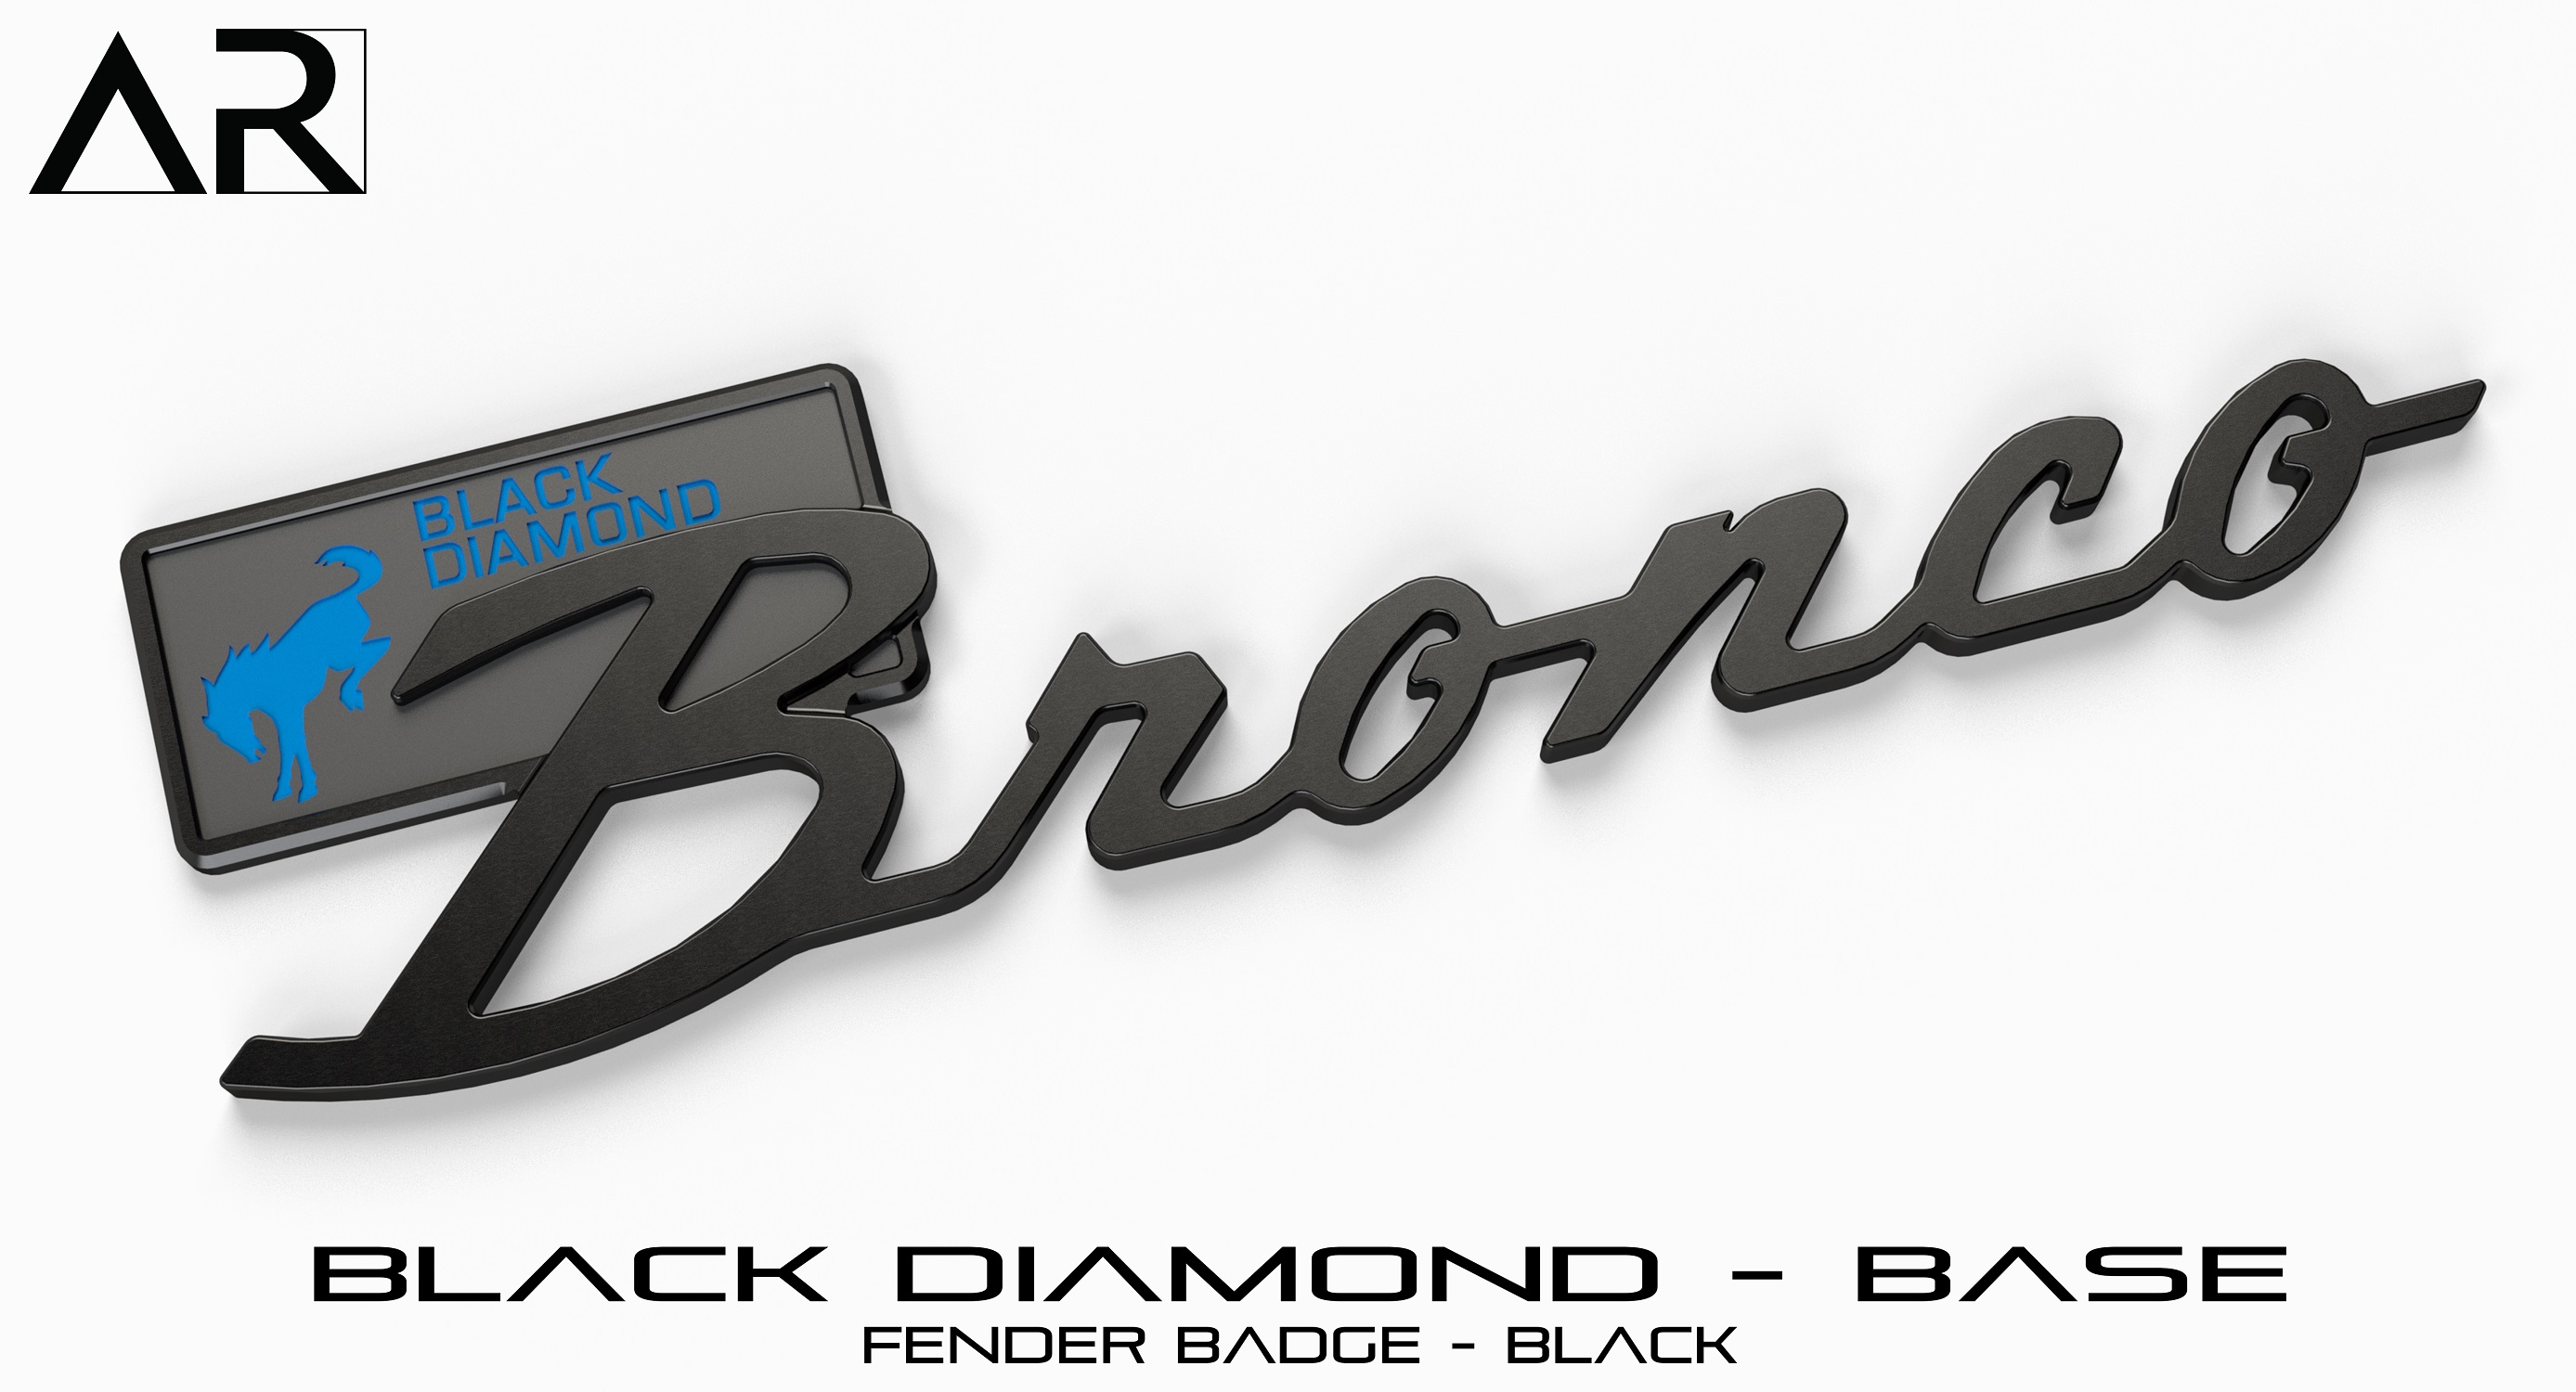 1601008_B  - Fender Badge  - Black Diamond Base - Black.jpg